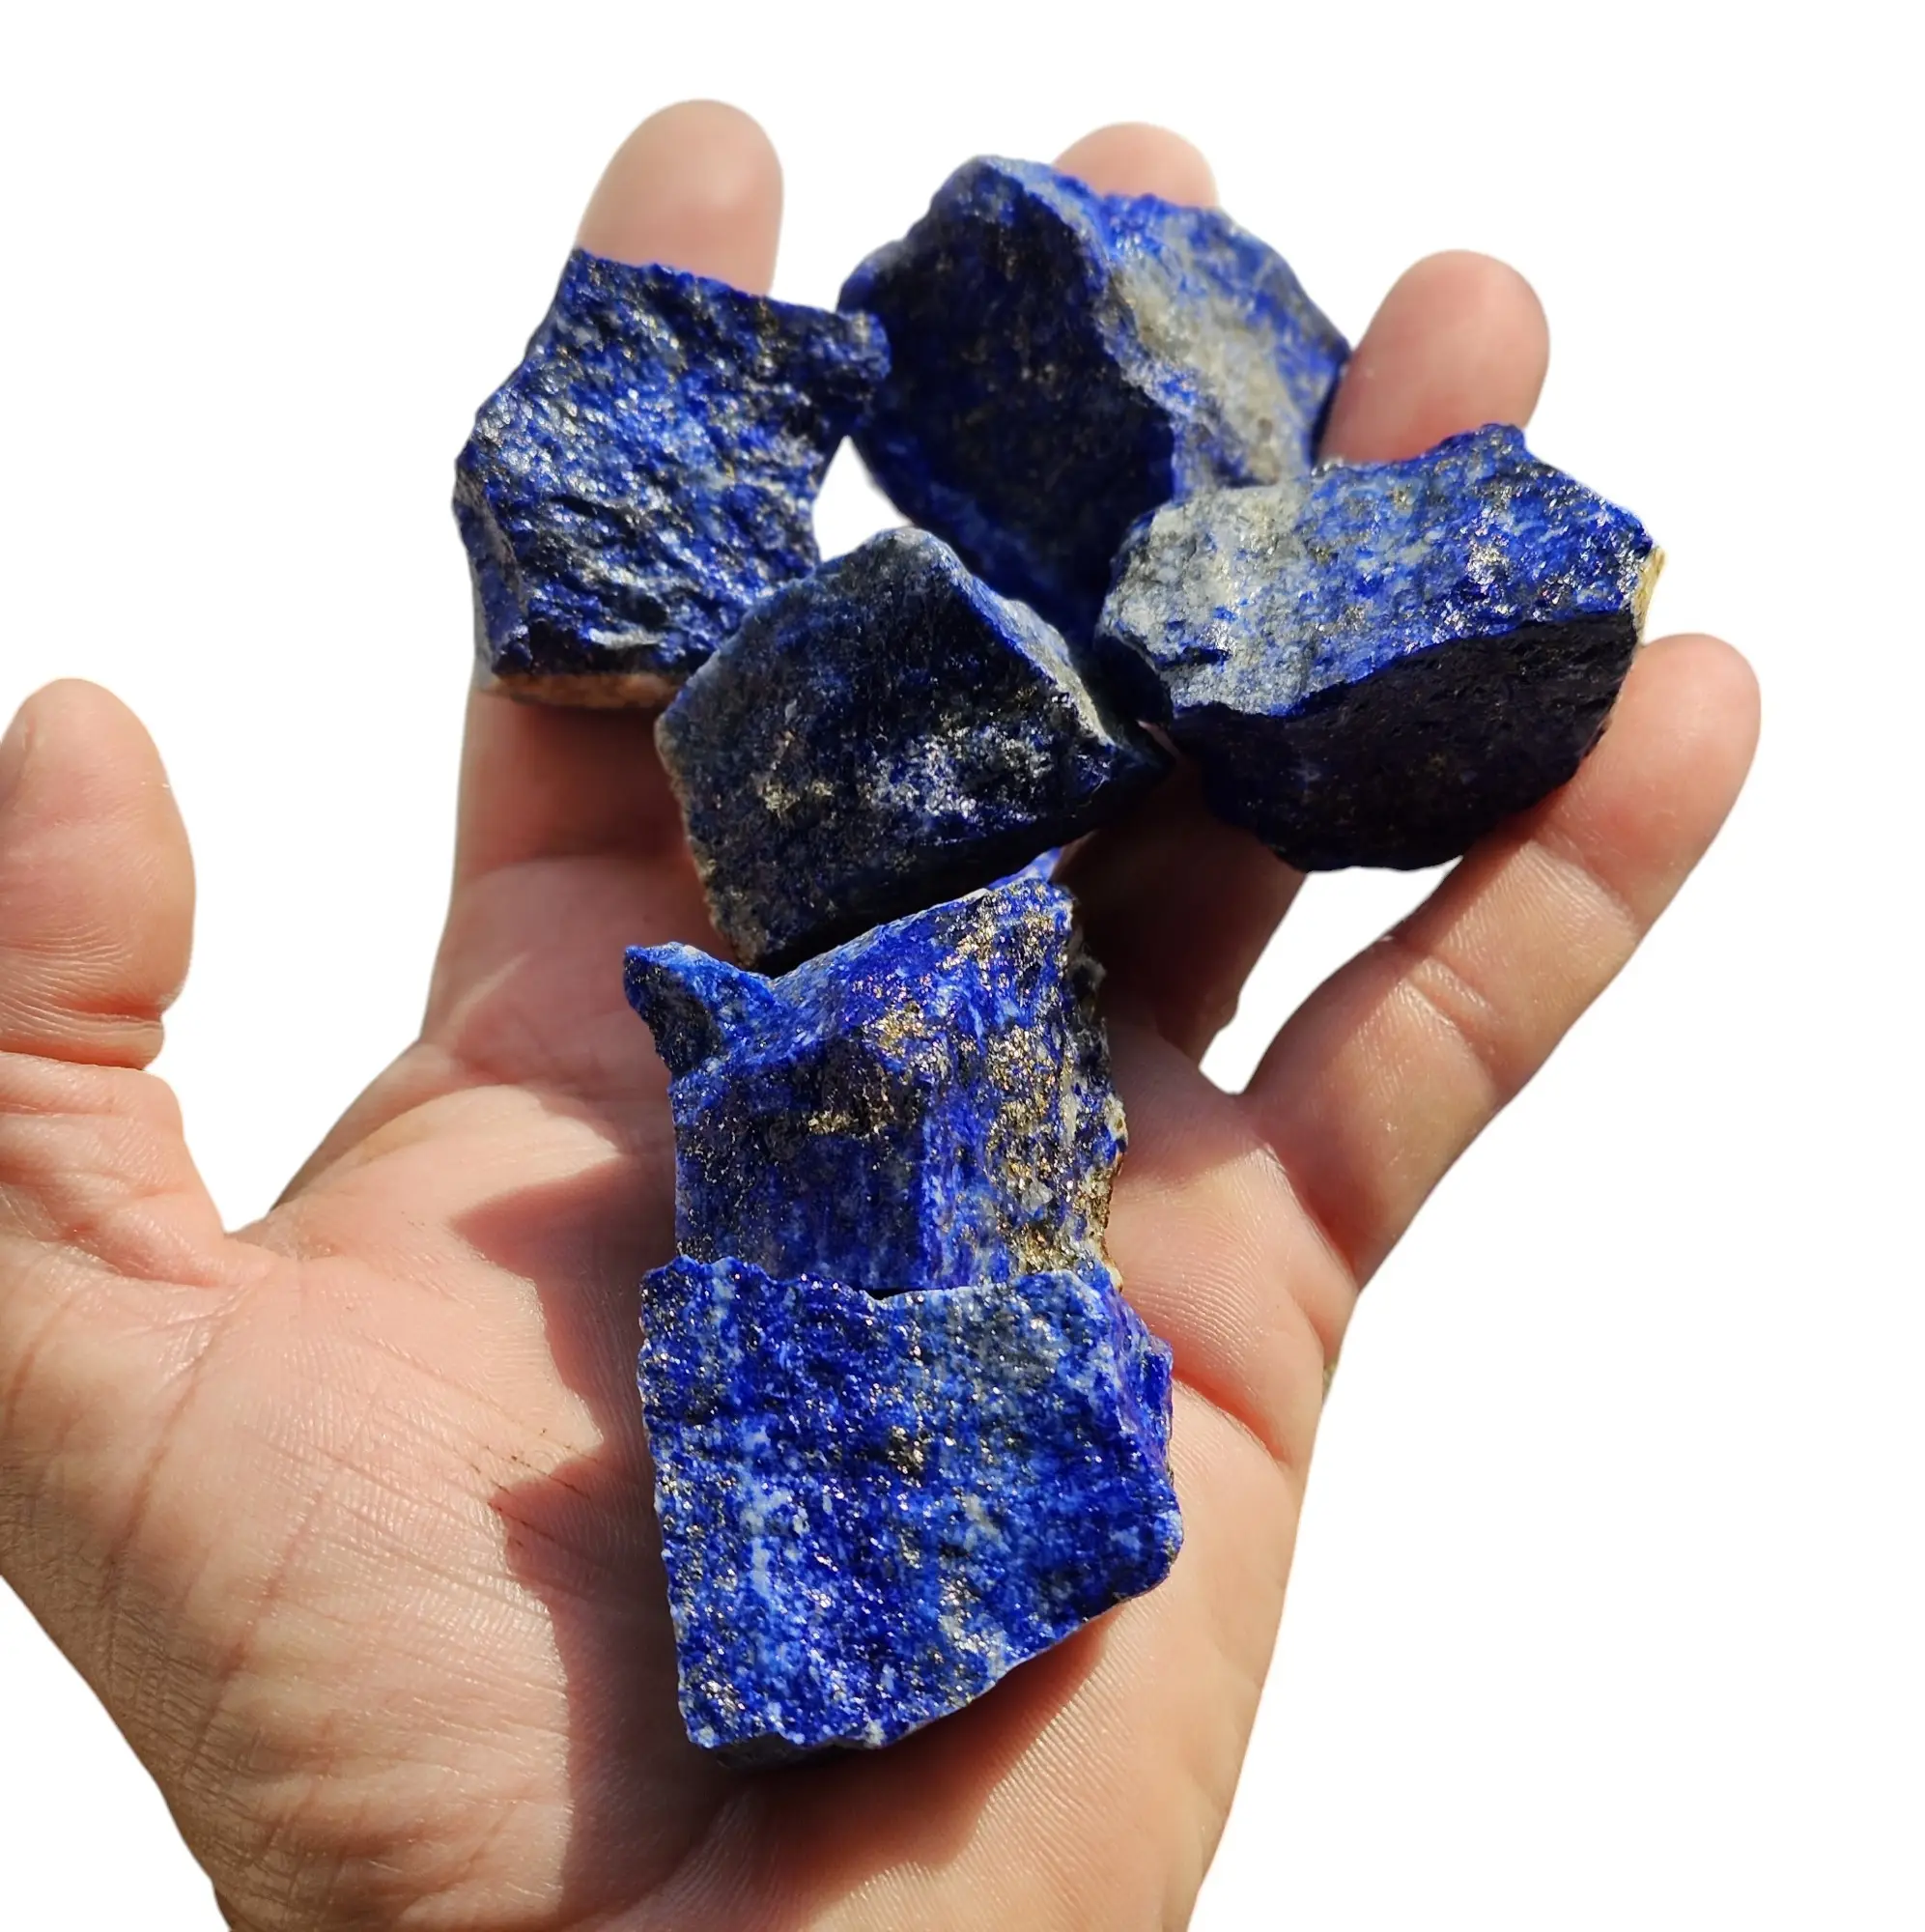 Nguyên liệu tự nhiên Lapis Lazuli 20-35mm nguyên tinh thể tự nhiên mảnh đá quý màu xanh tự nhiên Lapis Lazuli tinh thể chữa bệnh với số lượng lớn